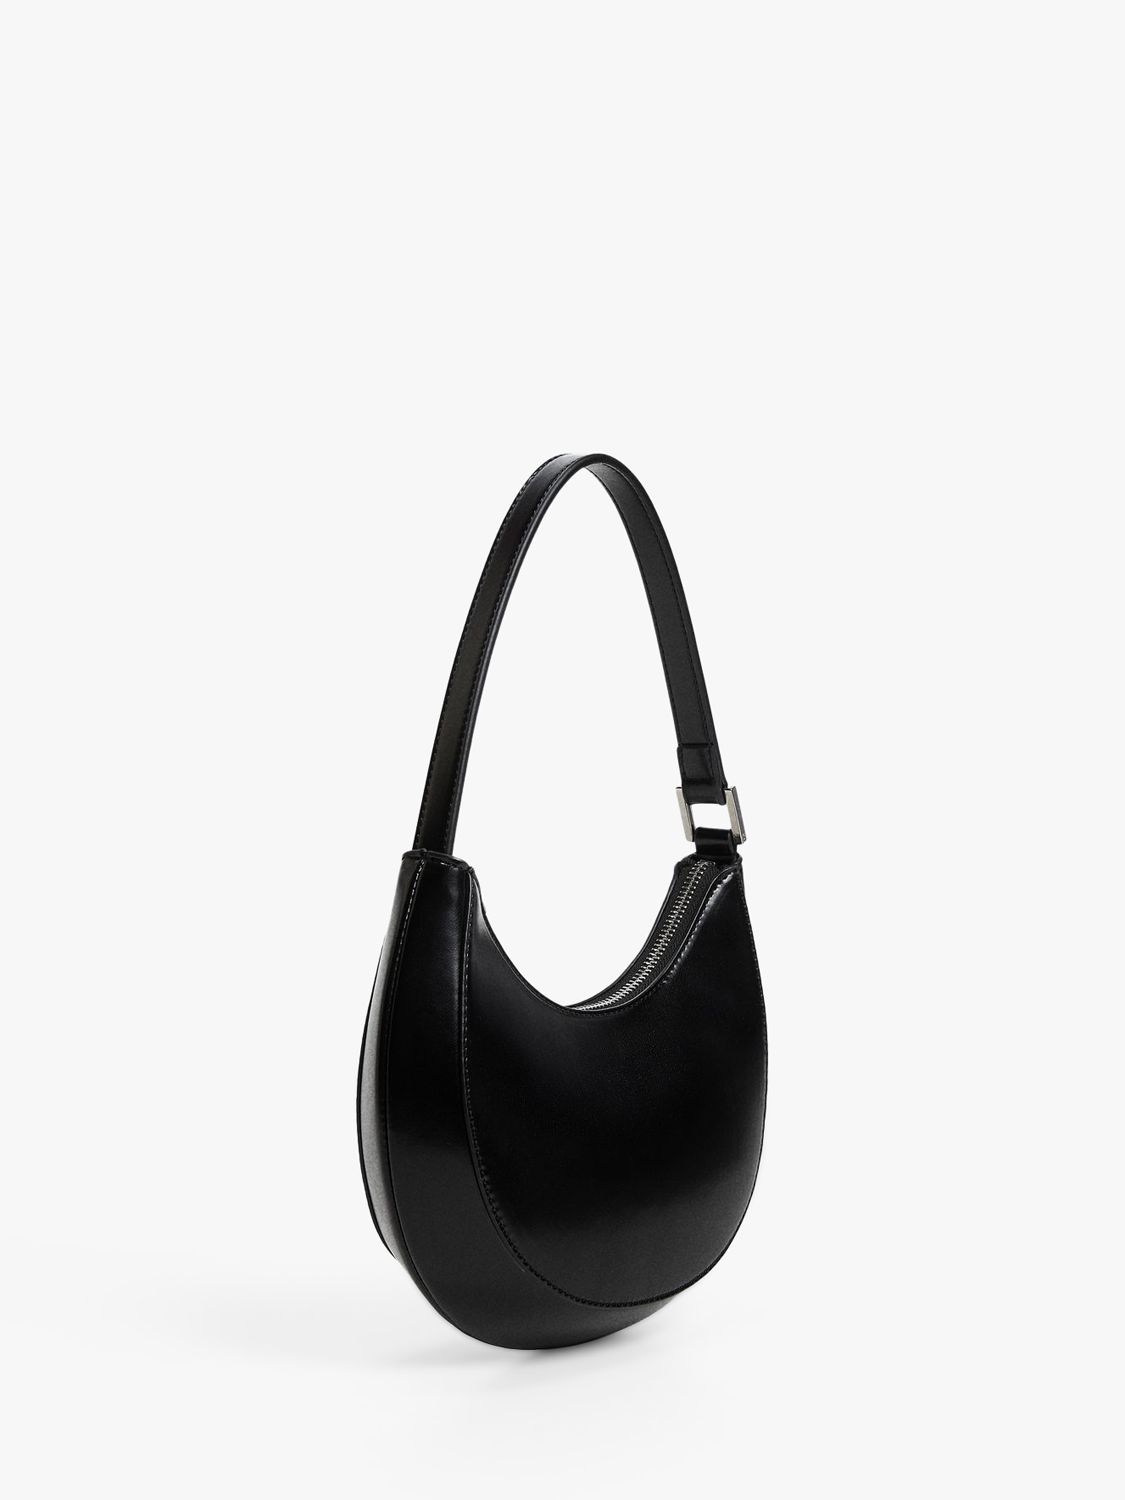 Mango Oval Short Handle Shoulder Bag, Black at John Lewis & Partners